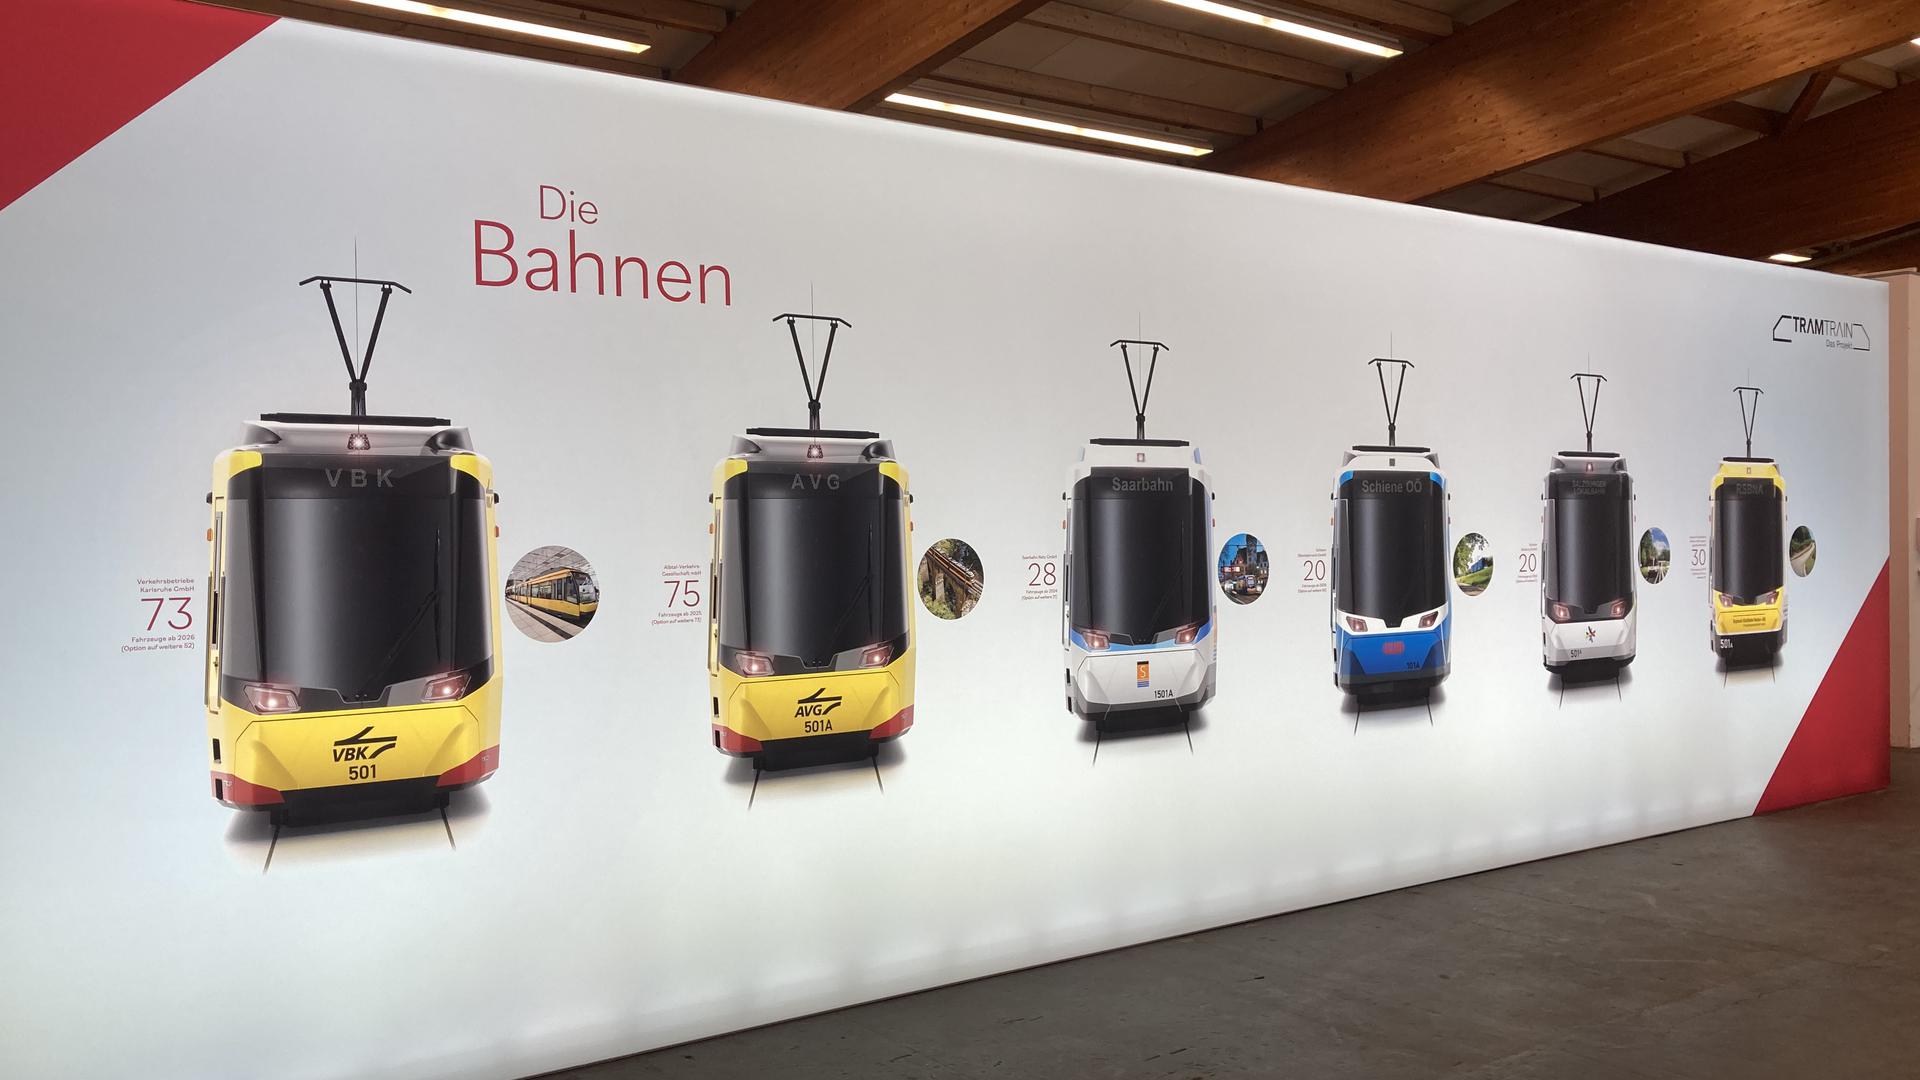 Ab 2025 sollen in Karlsruhe neue Straßenbahnen fahren. Wie die sich anfühlen und wie man darin sitzt – das konnten Interessierte nun hautnah erleben. 